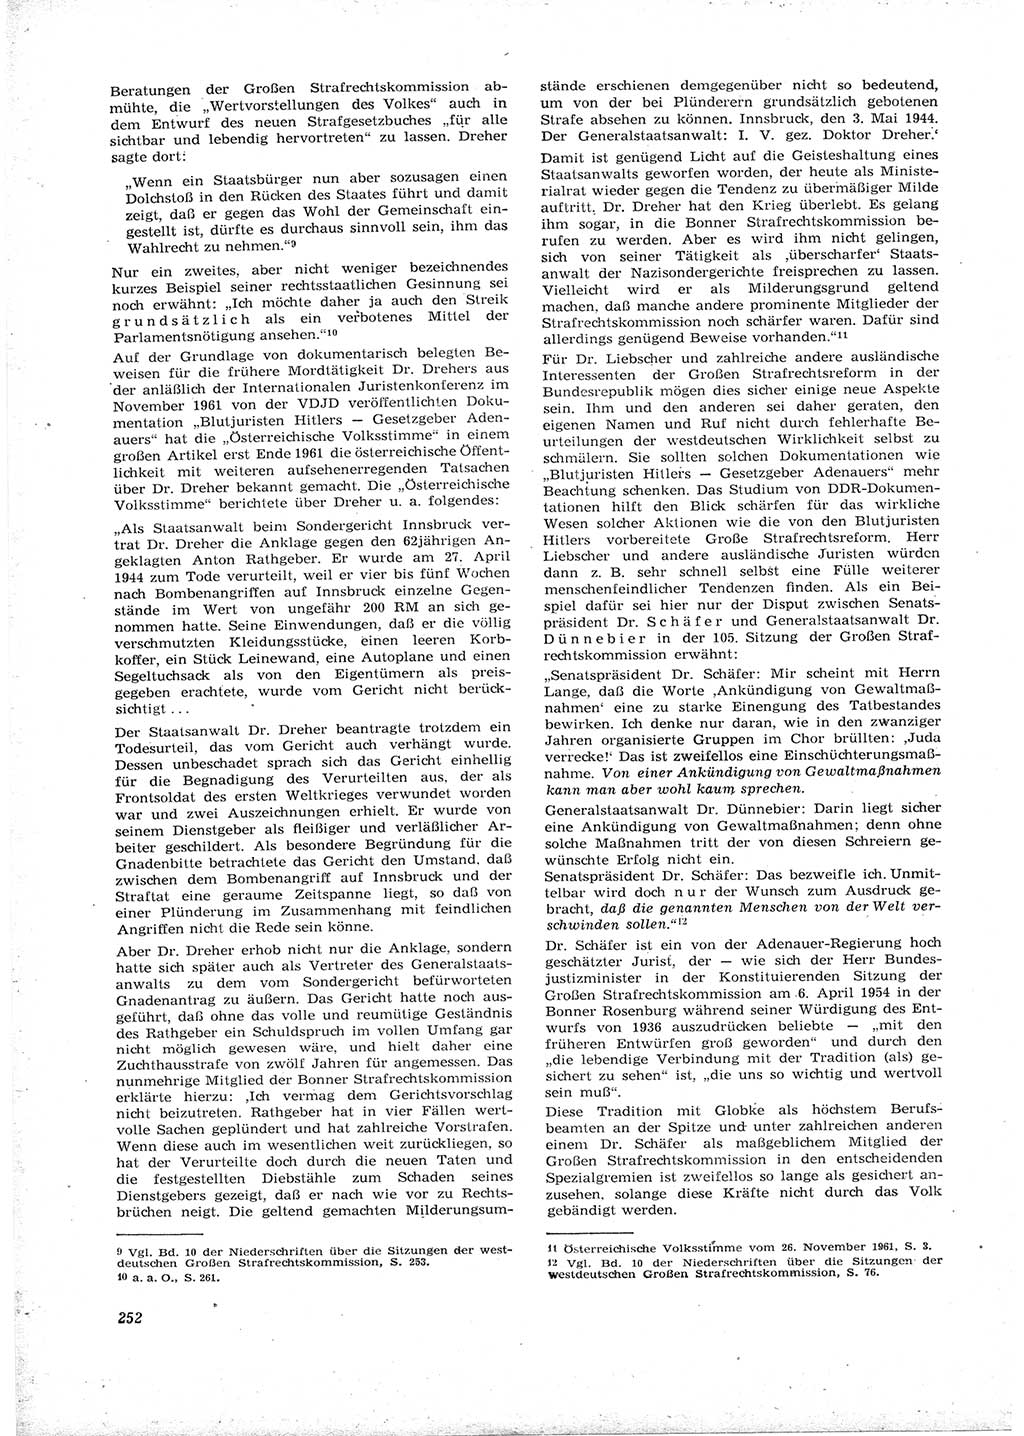 Neue Justiz (NJ), Zeitschrift für Recht und Rechtswissenschaft [Deutsche Demokratische Republik (DDR)], 16. Jahrgang 1962, Seite 252 (NJ DDR 1962, S. 252)